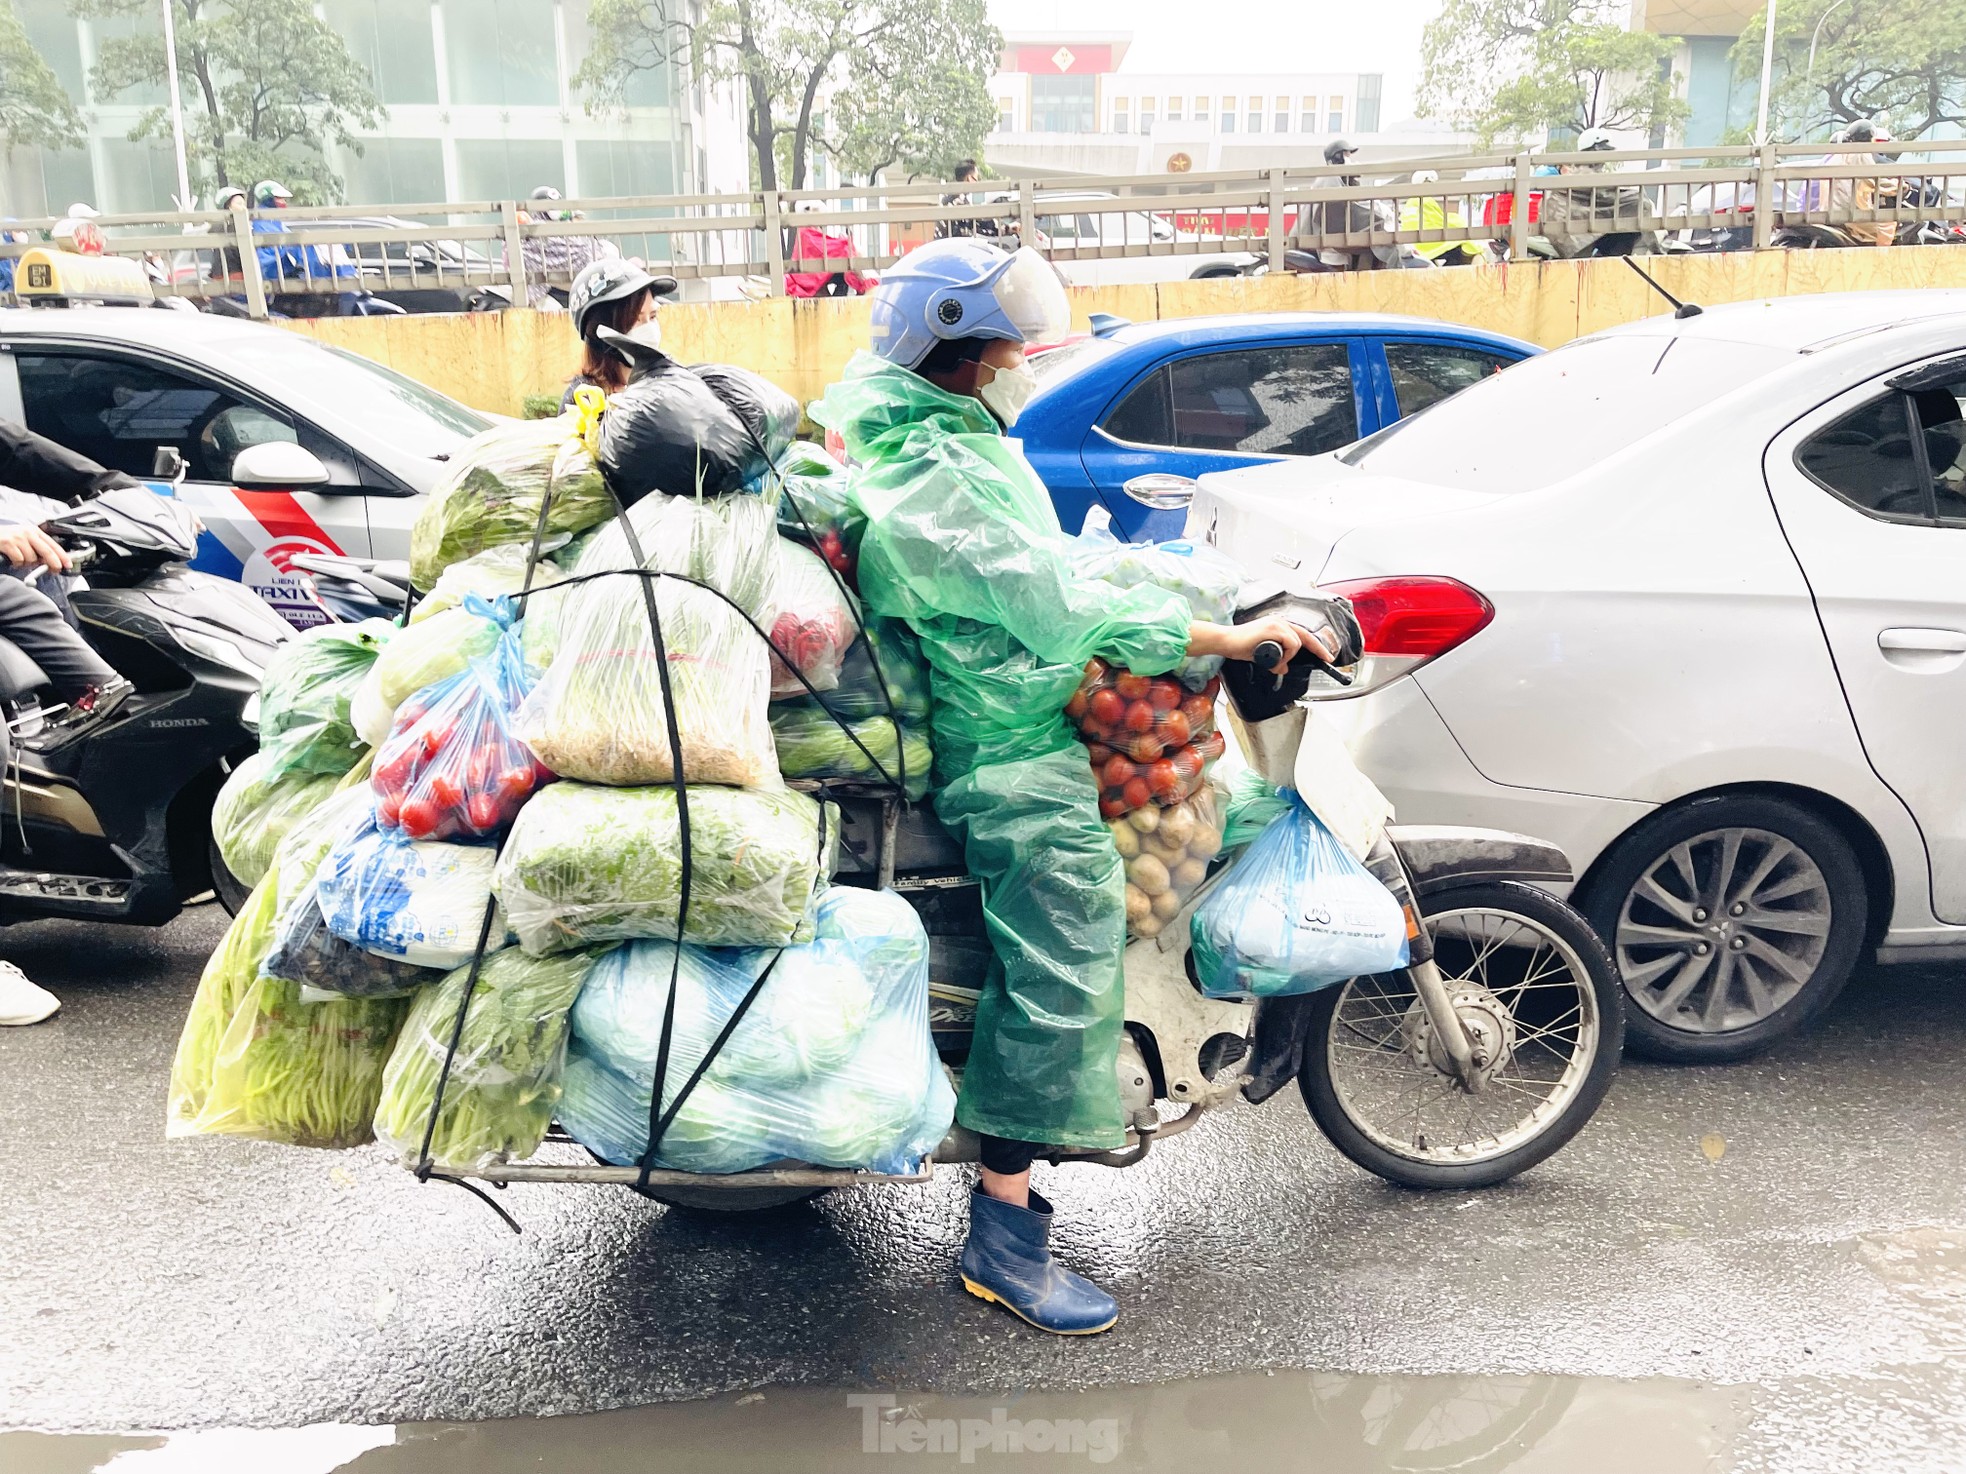 Nồm ẩm, trời mù kèm mưa khiến giao thông Hà Nội rối loạn - Ảnh 6.